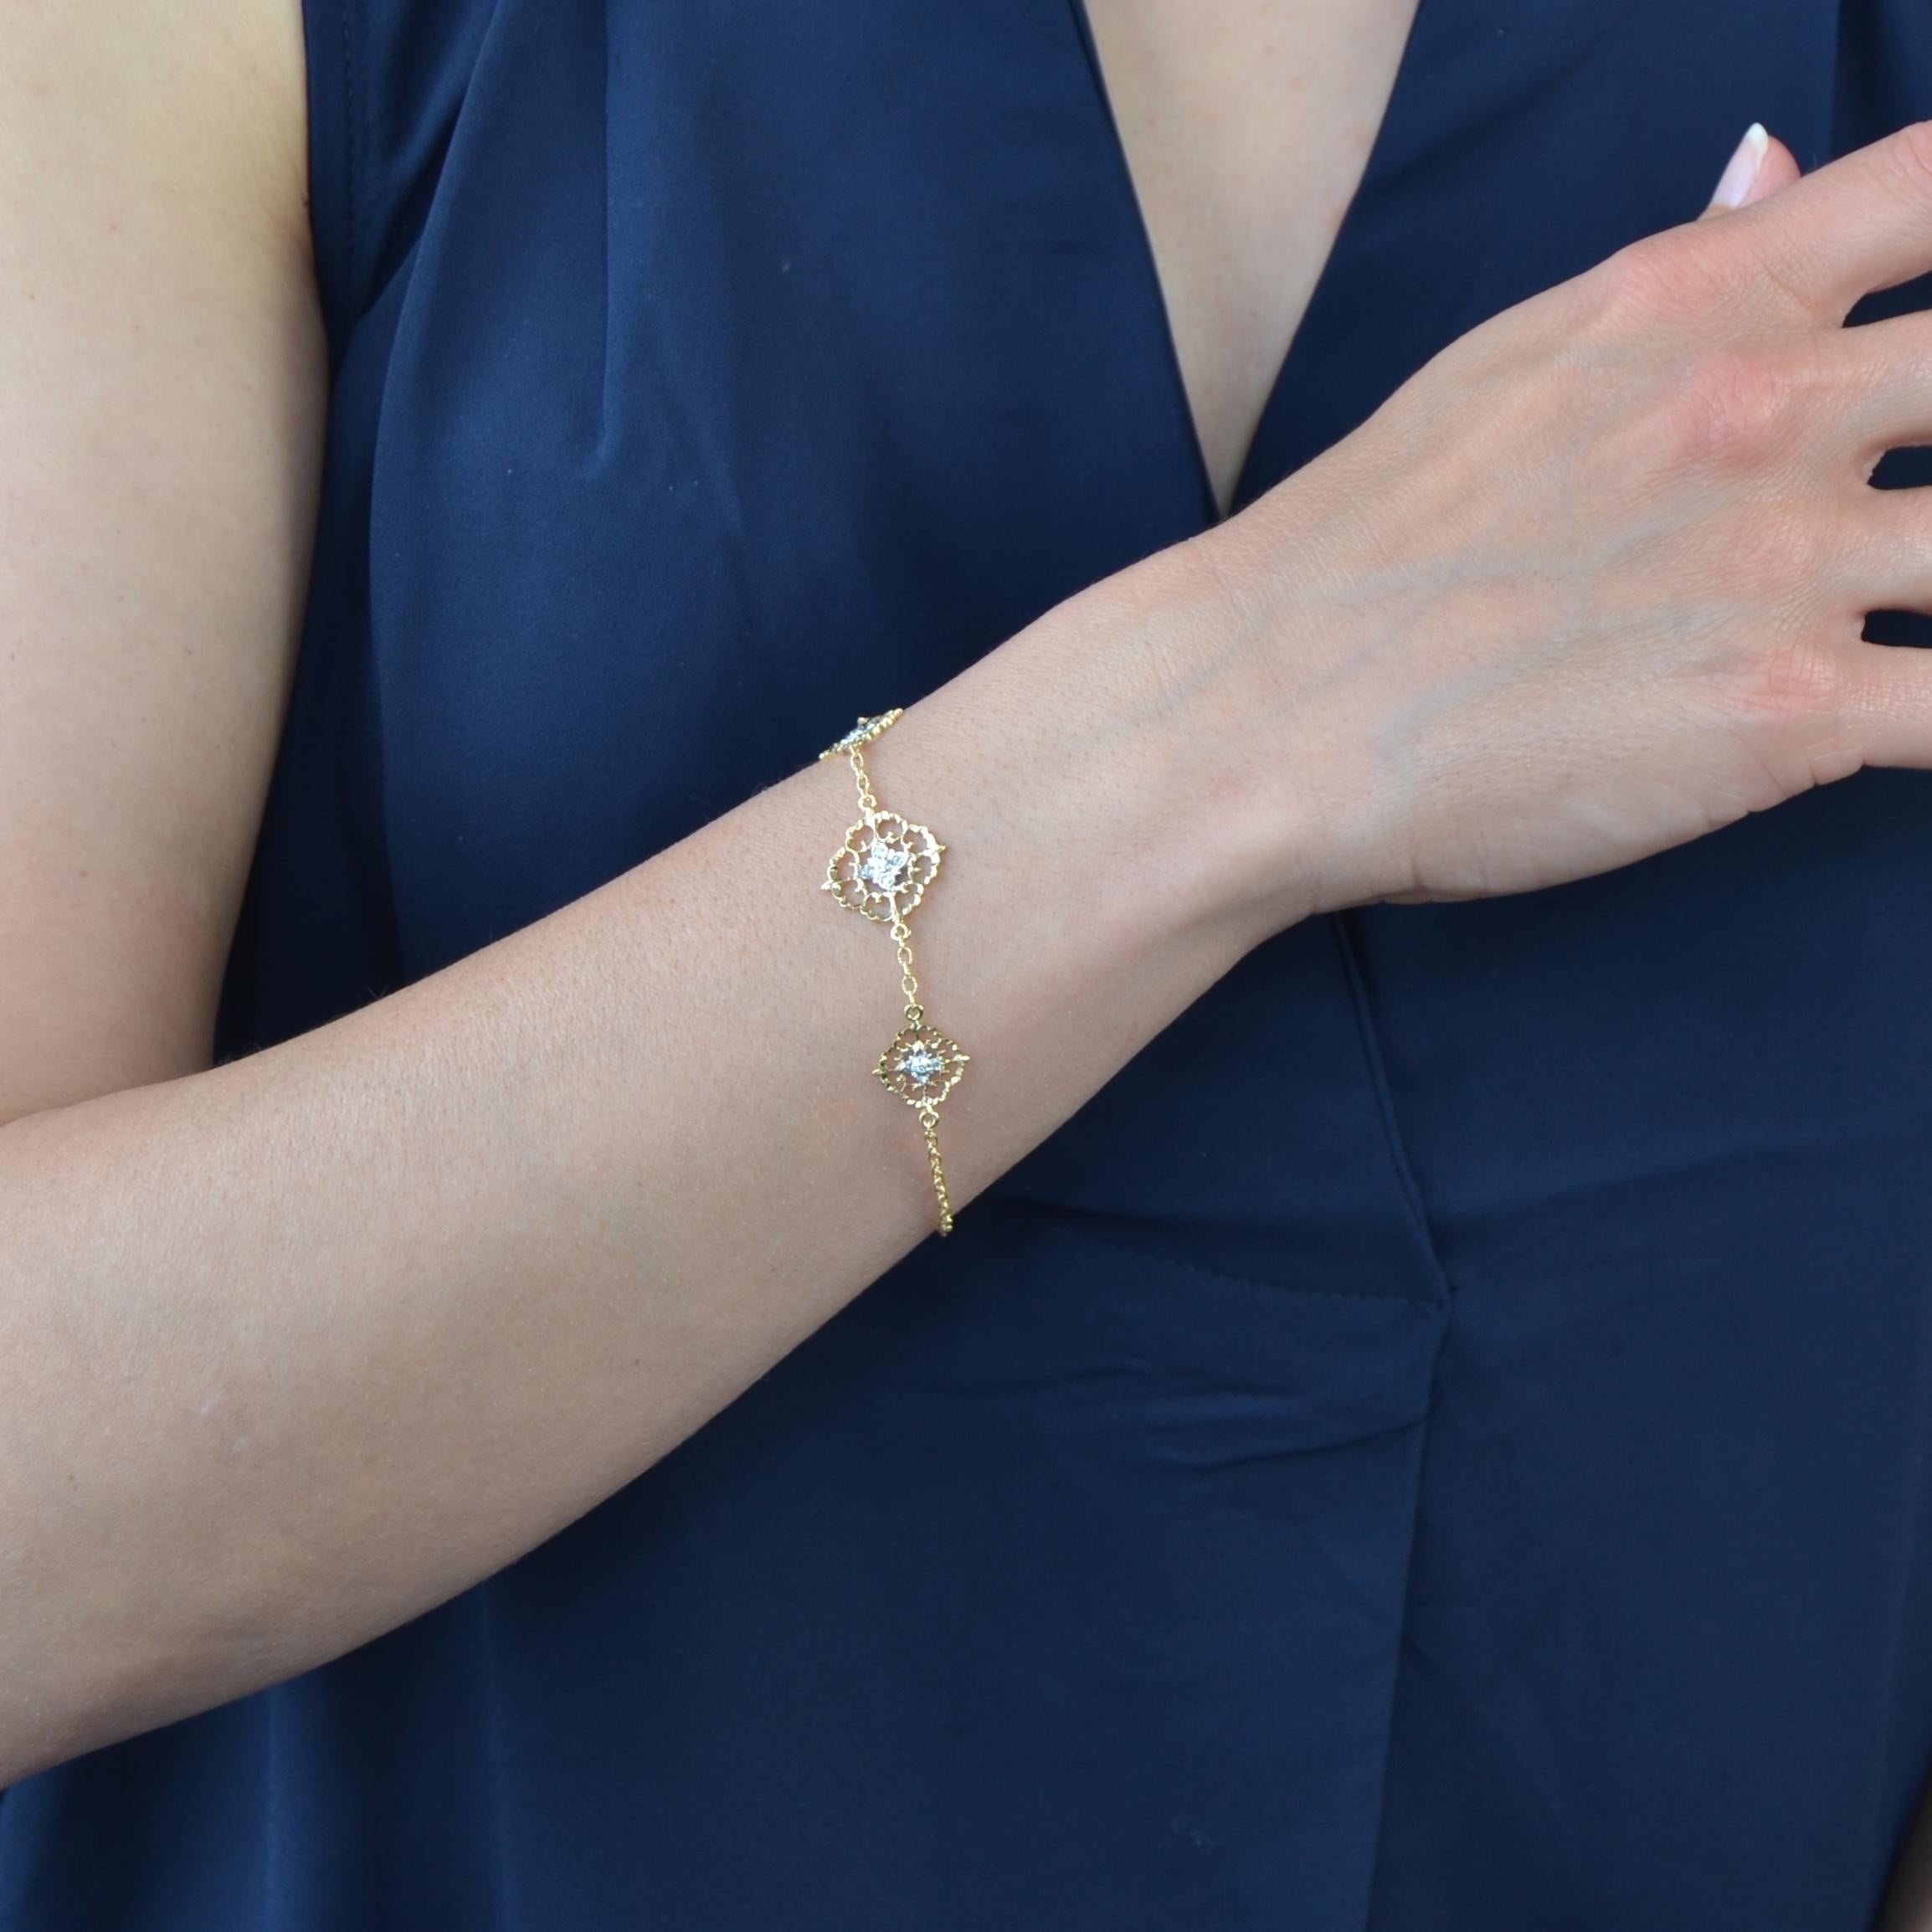 Bracelet en or jaune et blanc 18 carats.
Ce charmant bracelet en chaîne est décoré de 3 motifs plats percés, ciselés d'arabesques et sertis de diamants modernes taille brillant, celui du centre étant plus important. Ils sont séparés les uns des